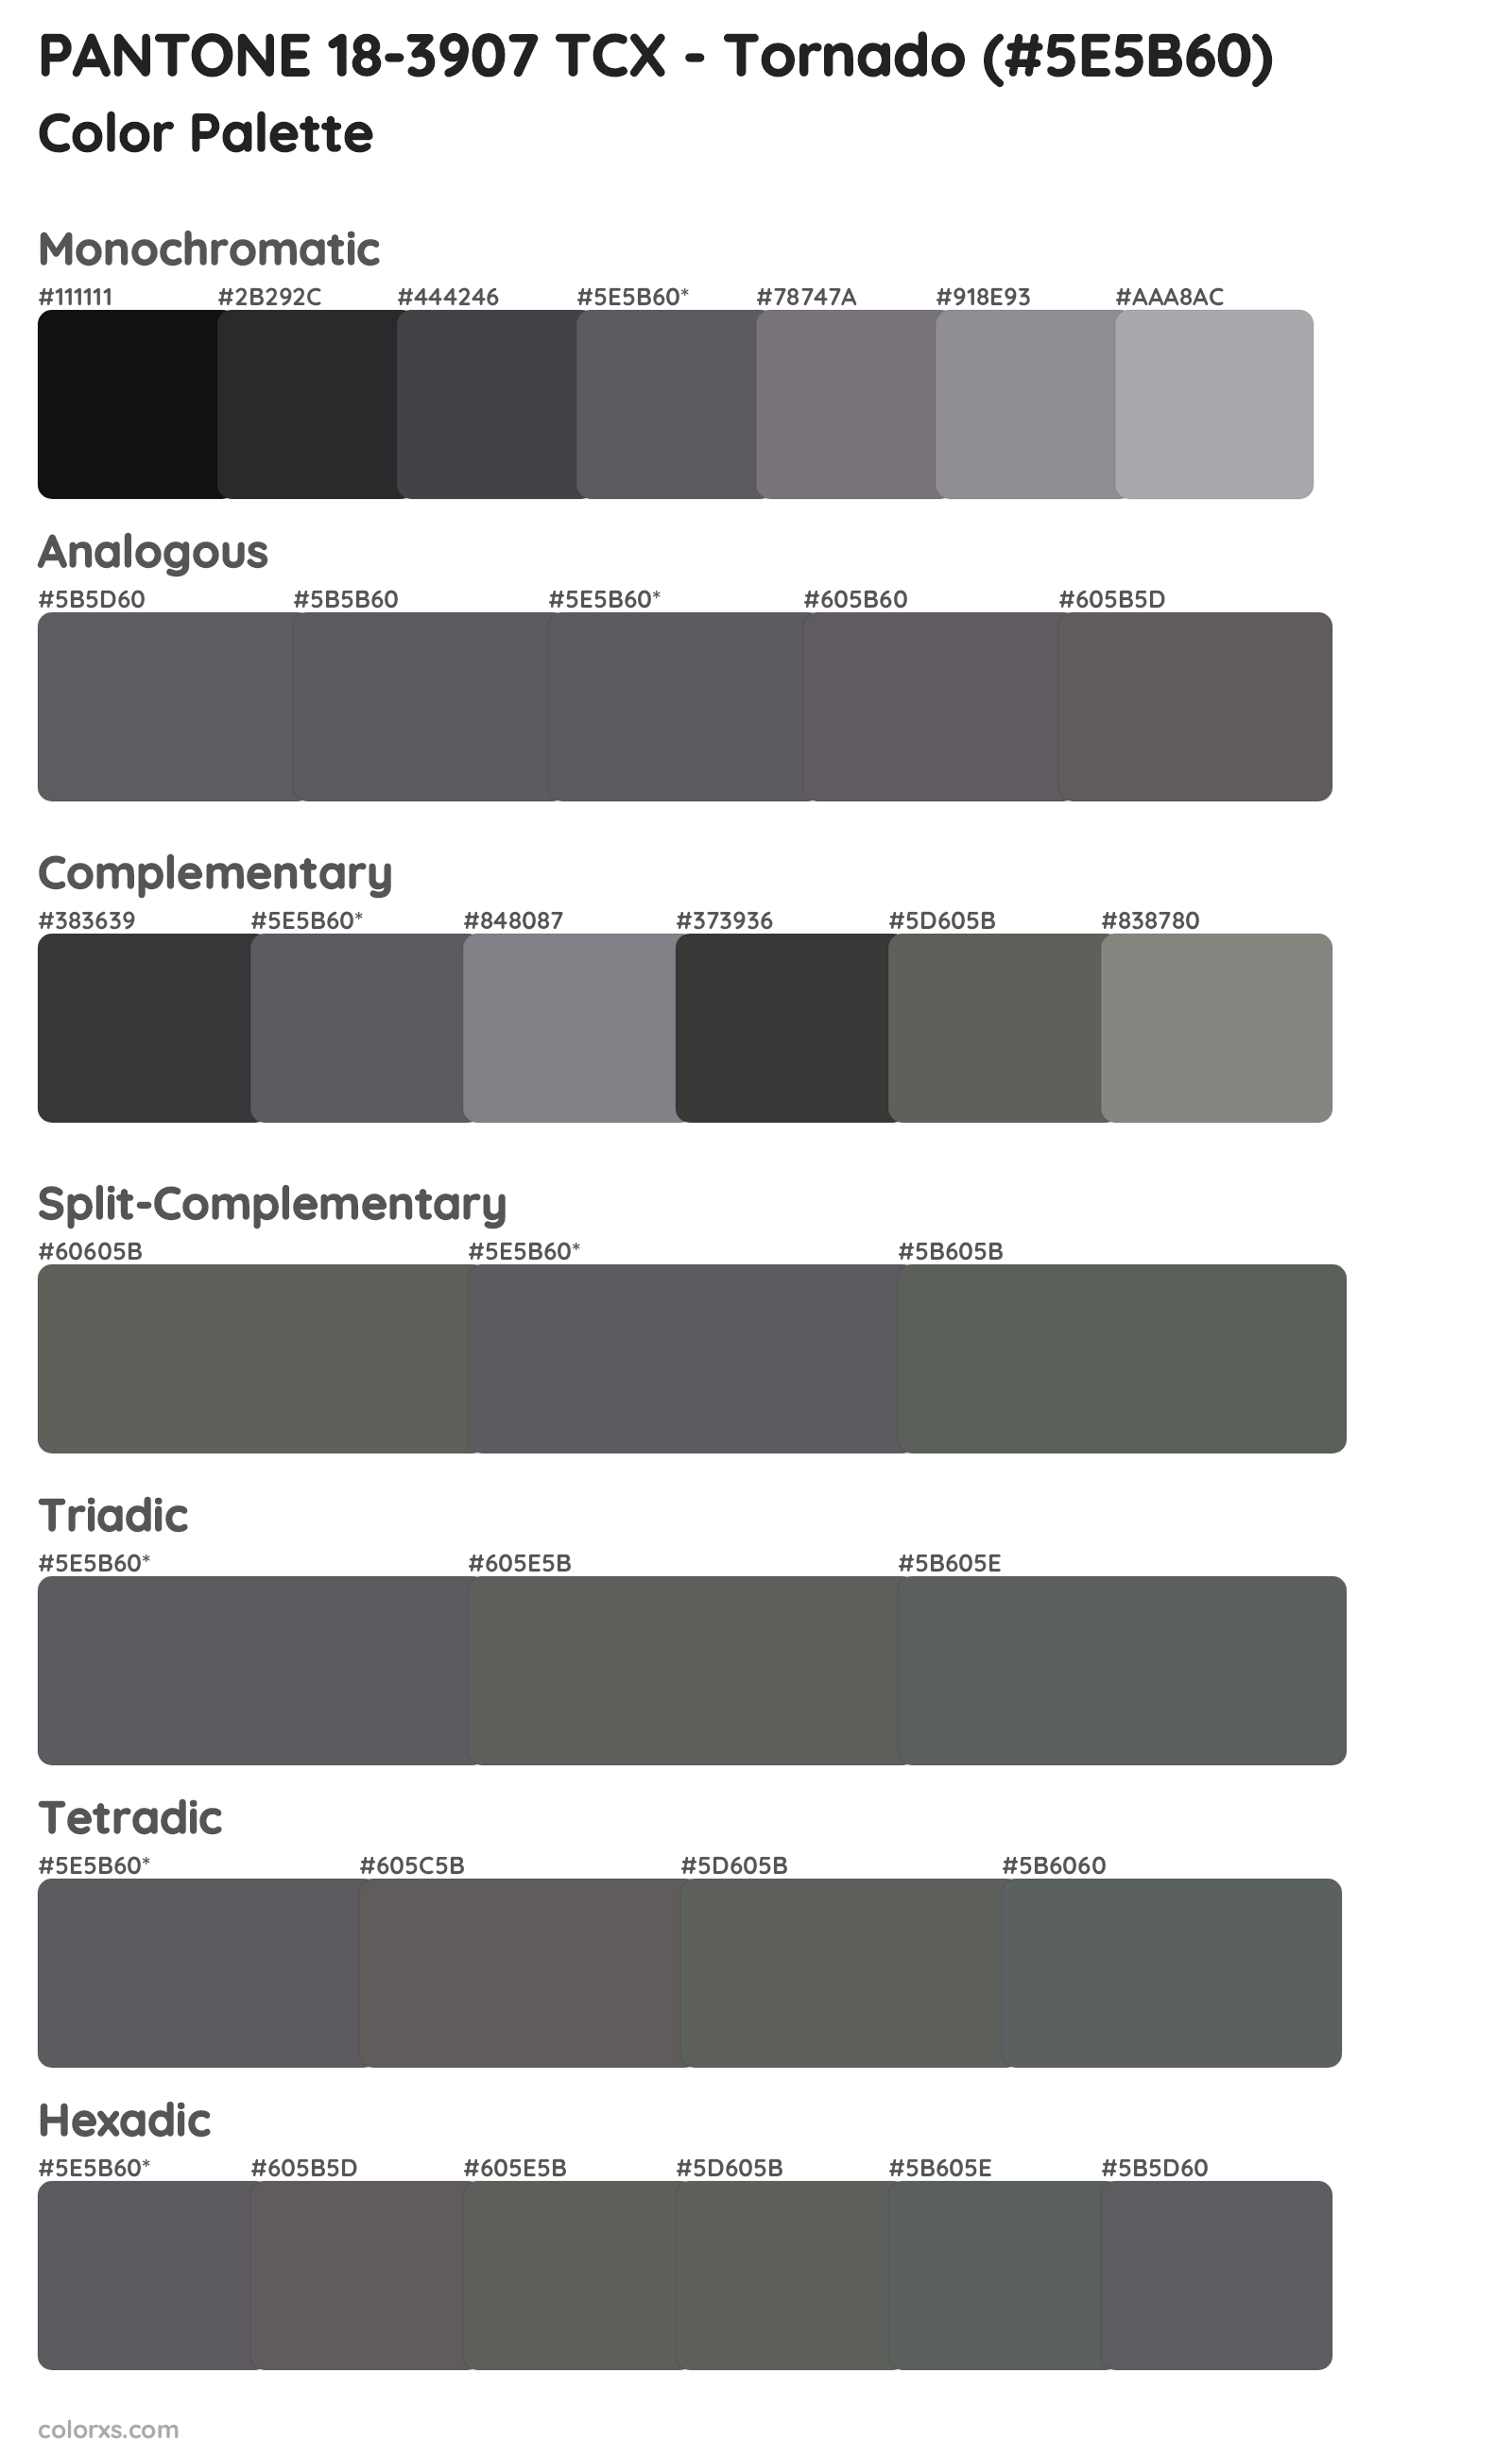 PANTONE 18-3907 TCX - Tornado Color Scheme Palettes